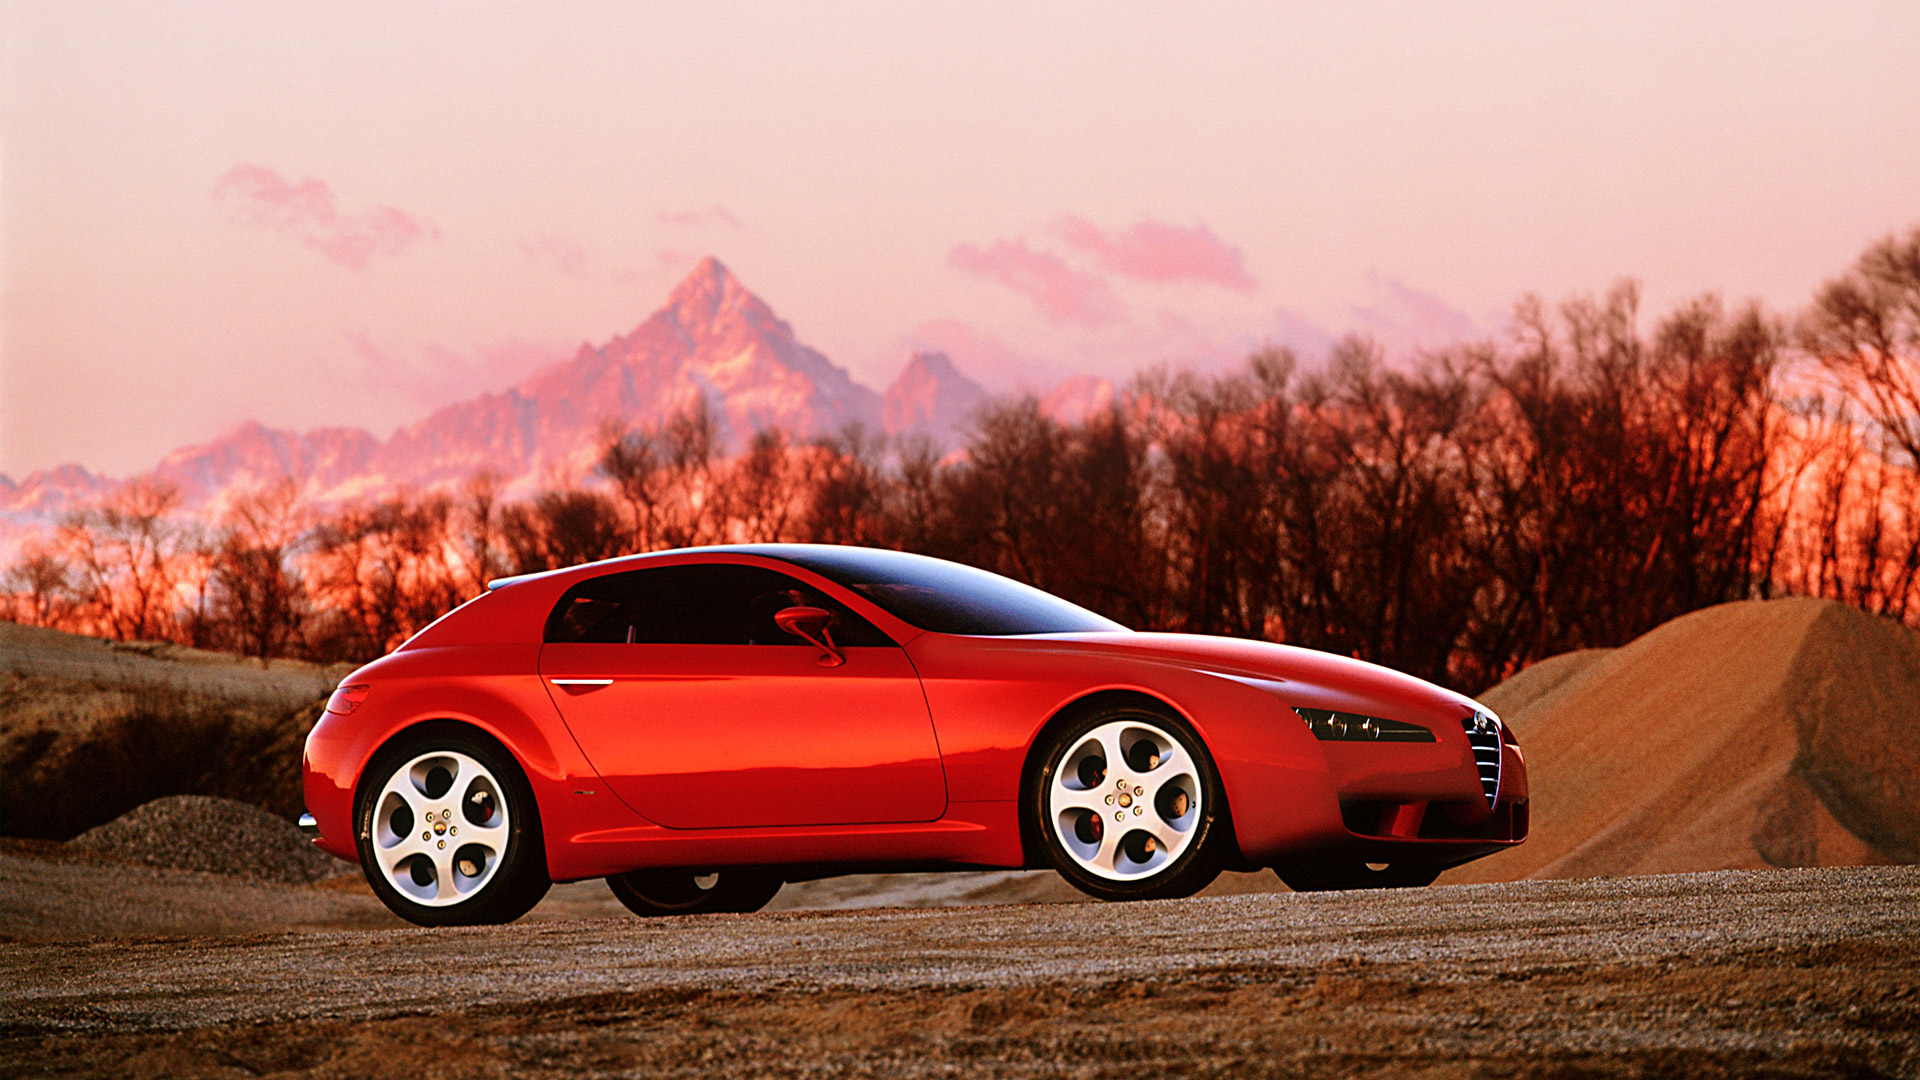  2002 Alfa Romeo Brera Concept Wallpaper.